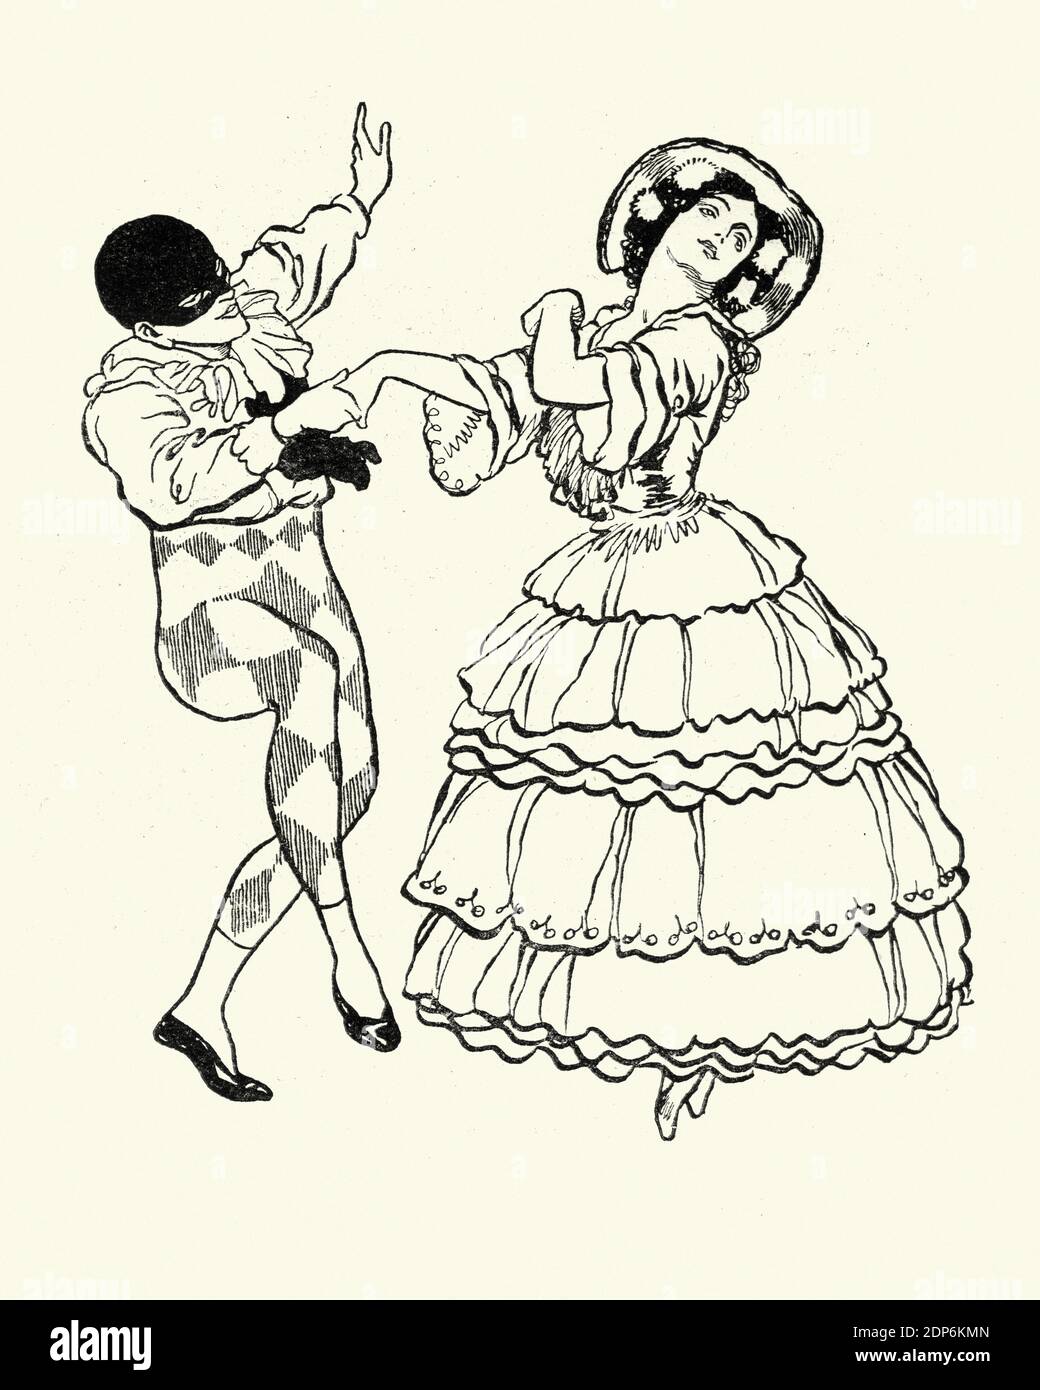 Harlequin danza con la signora del balletto russo Carnaval, un balletto basato sulla musica del piano suite di Robert Schumann, Carnaval, Op. 9. Rene B Foto Stock